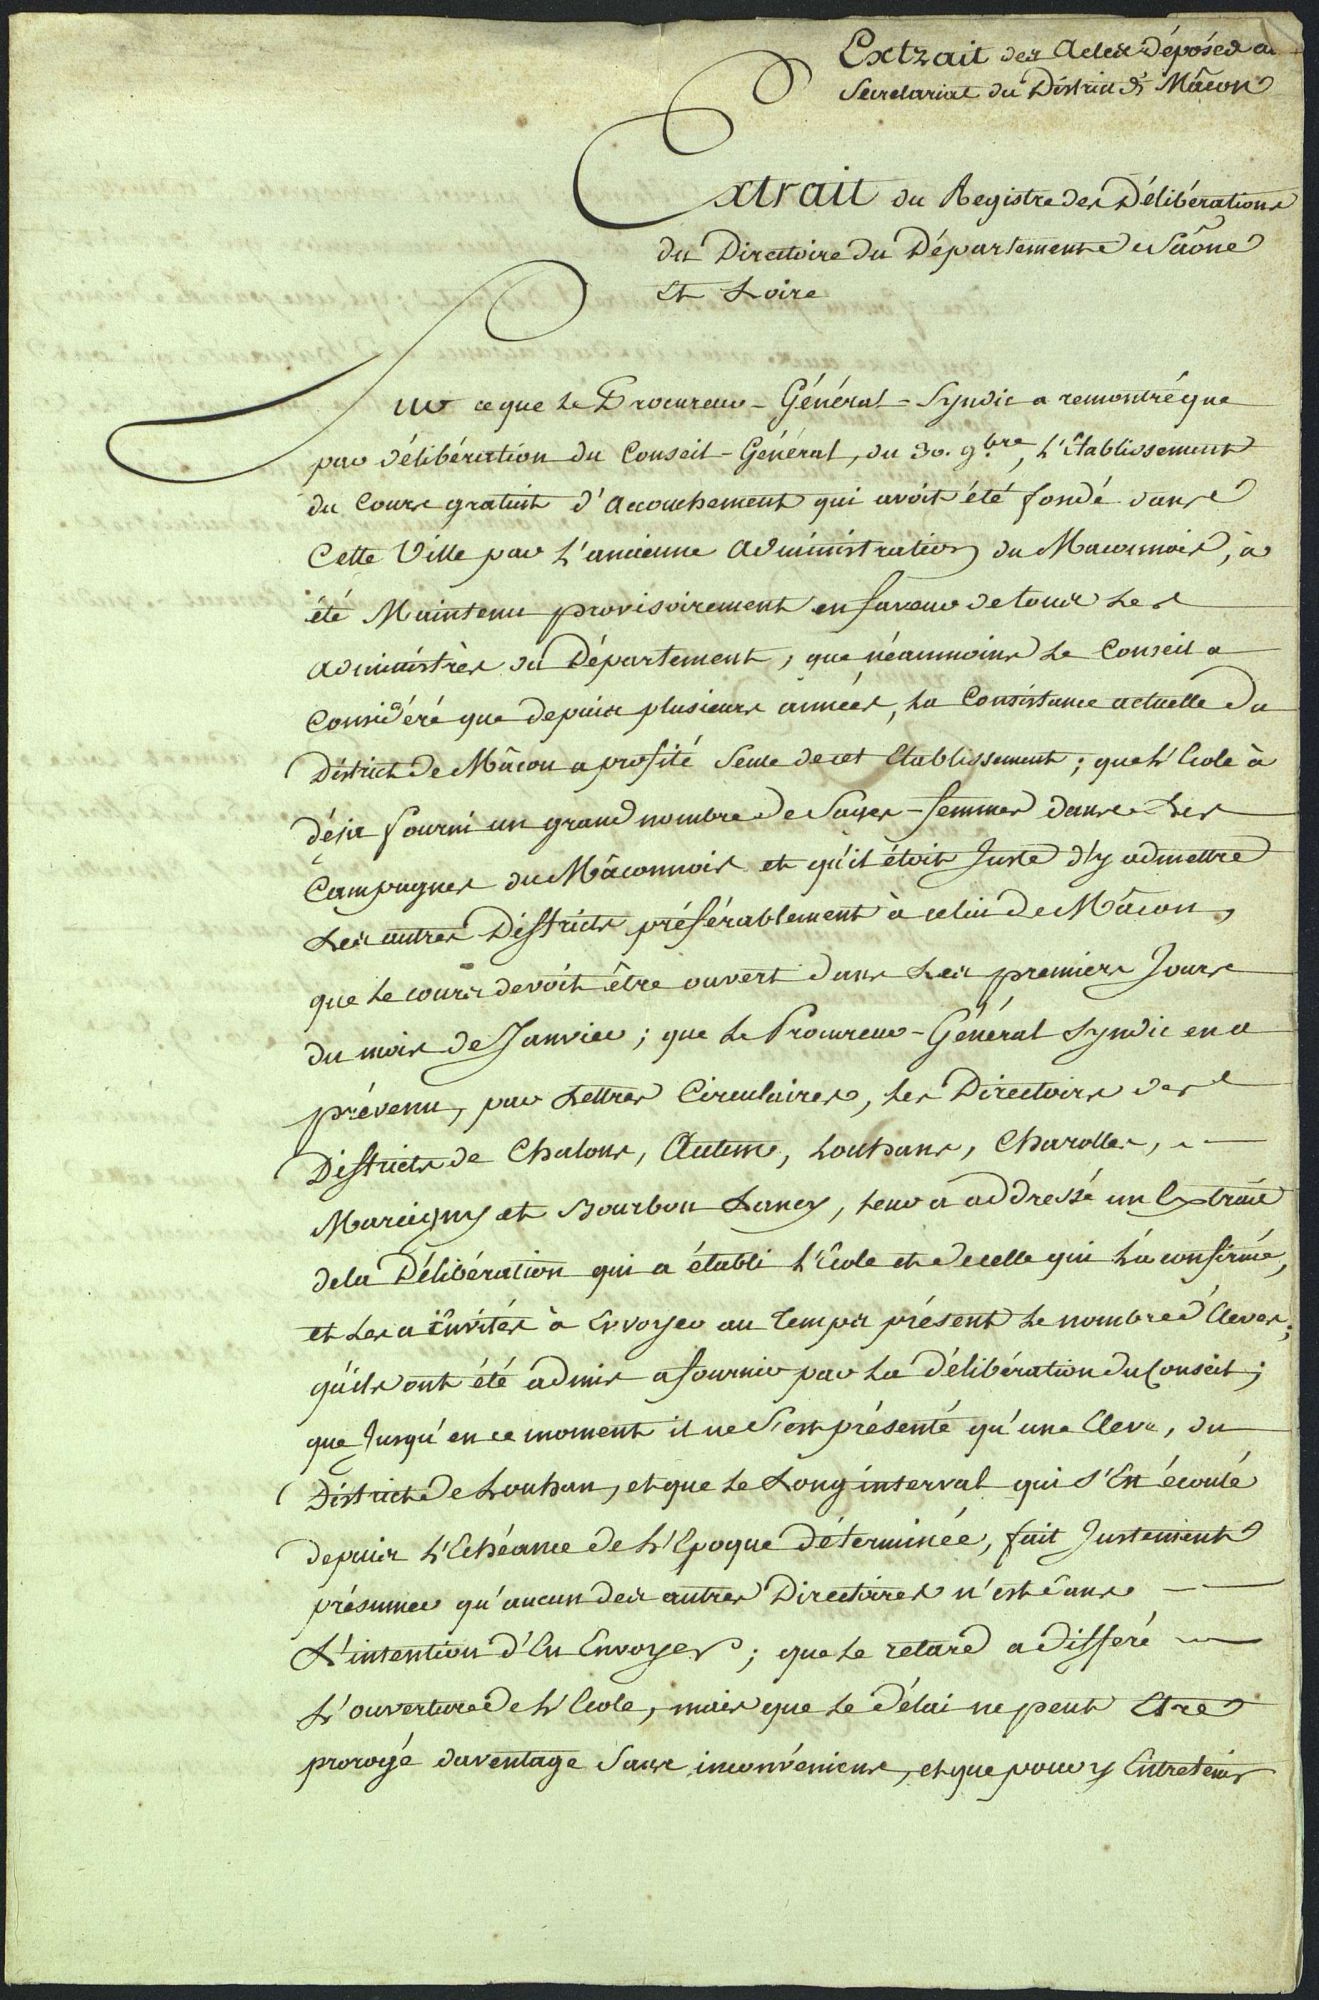 Arrêté du Directoire du département de Saône-et-Loire sur l'organisation de cours d'accouchement (2 F 339, 1791) Page 1/2